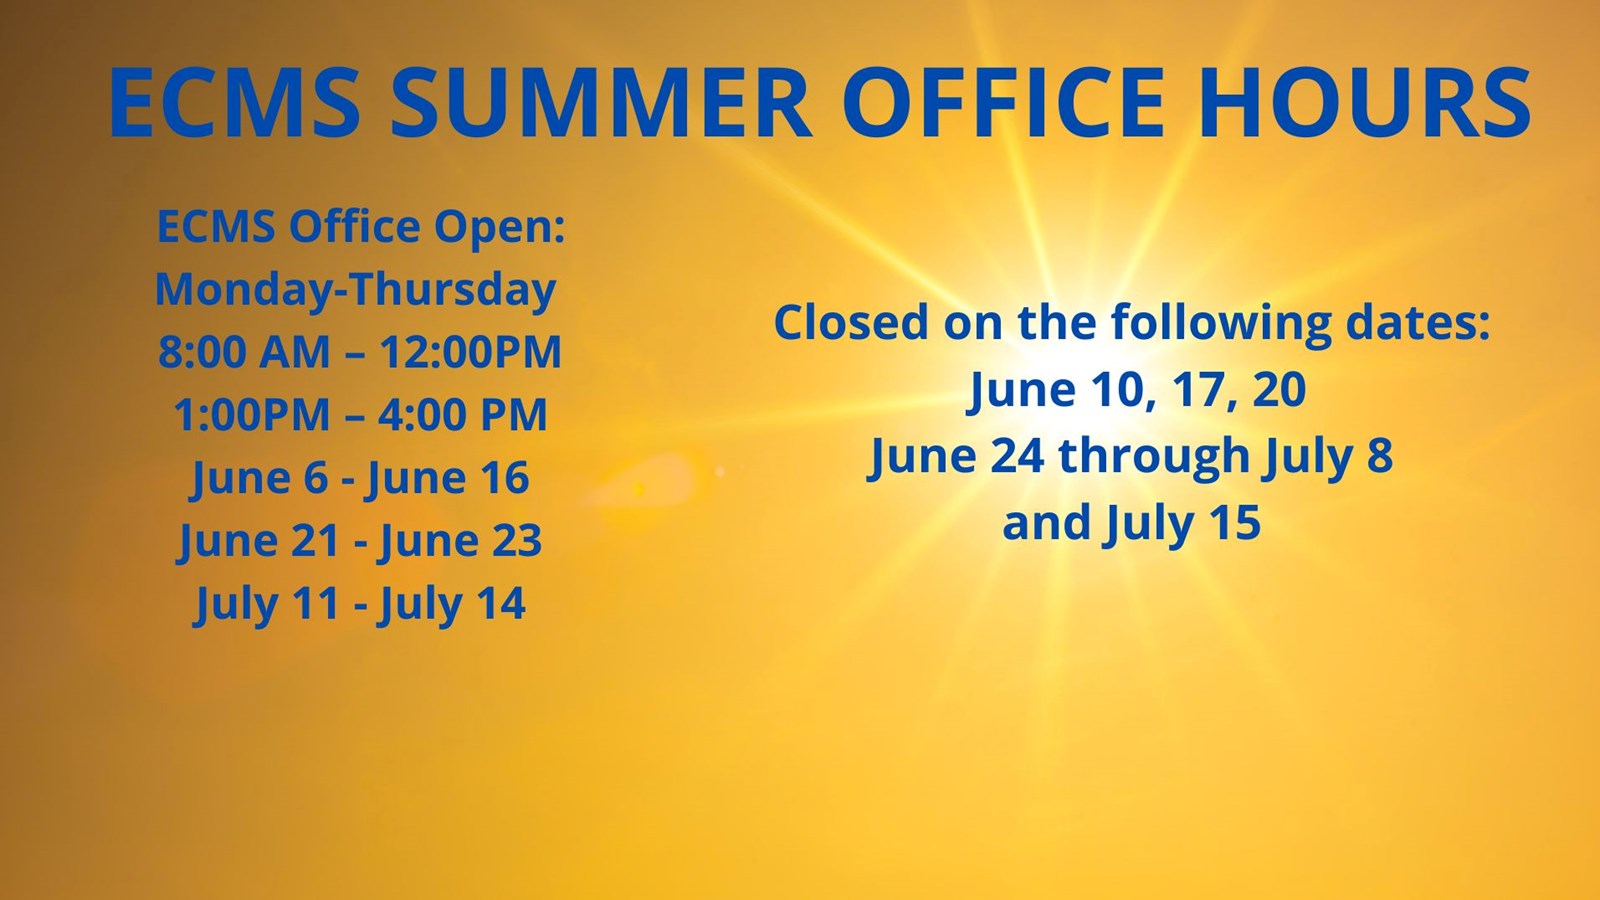 ECMS summer office hours